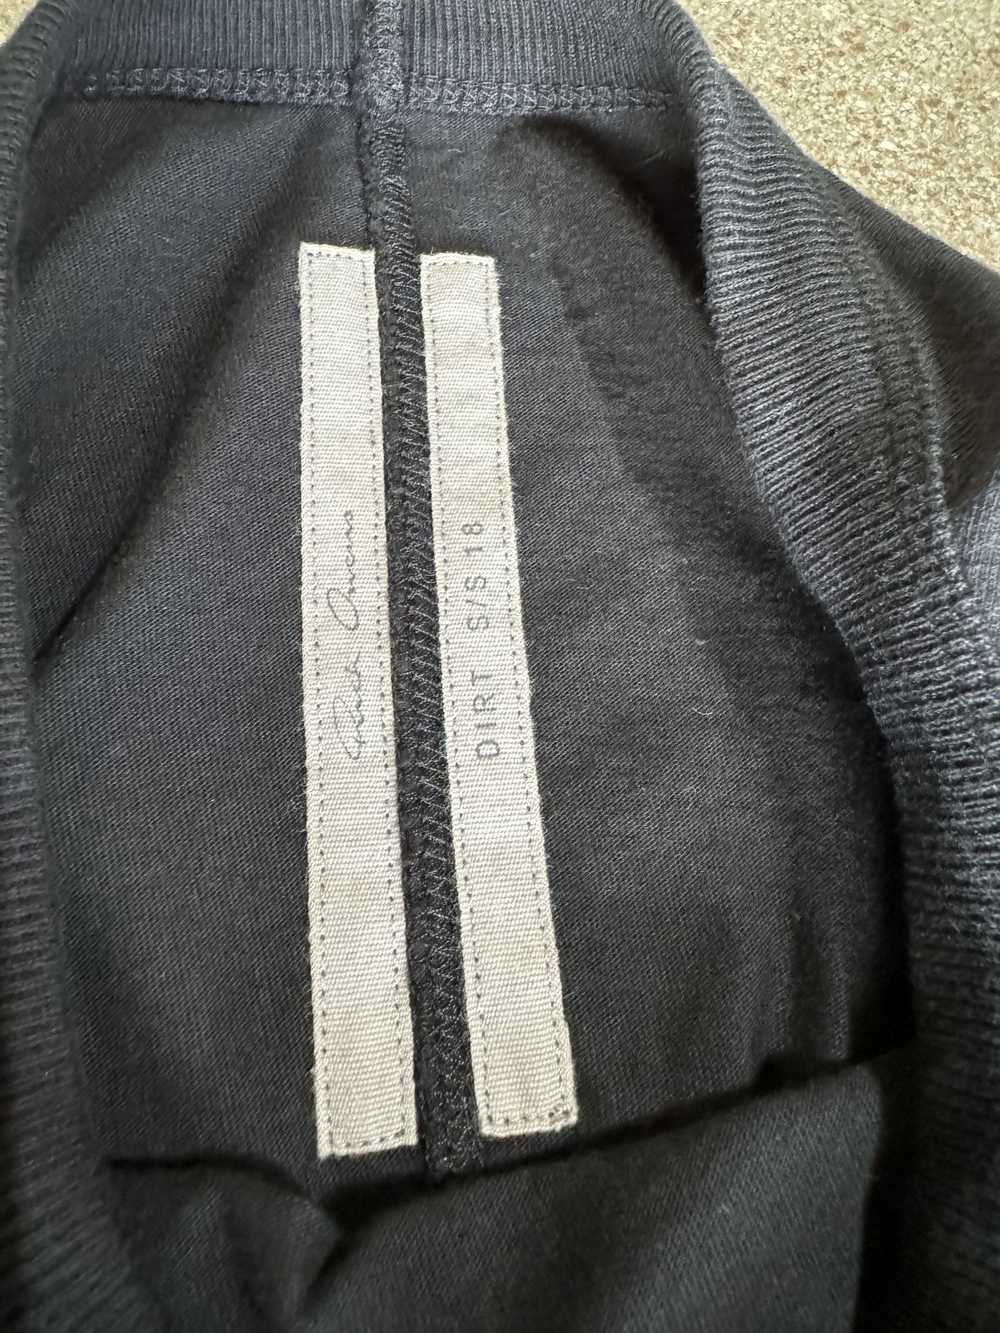 Rick Owens Dirt Longsleeve T Shirt - image 2